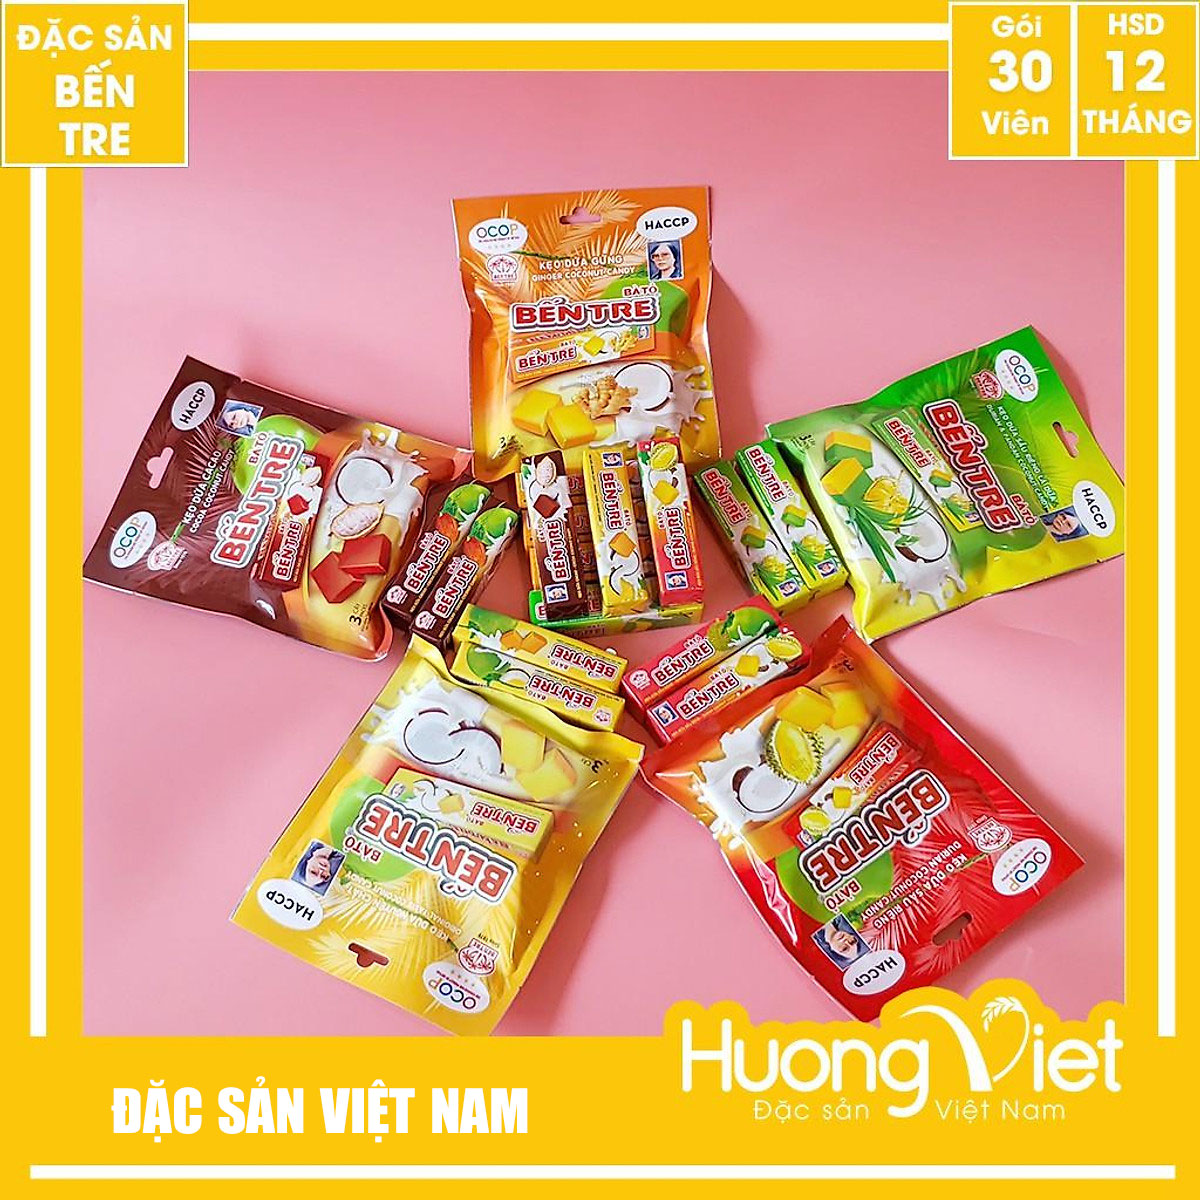 Kẹo dừa Bến Tre cao cấp gia truyền thương hiệu HAI TỎ 150g